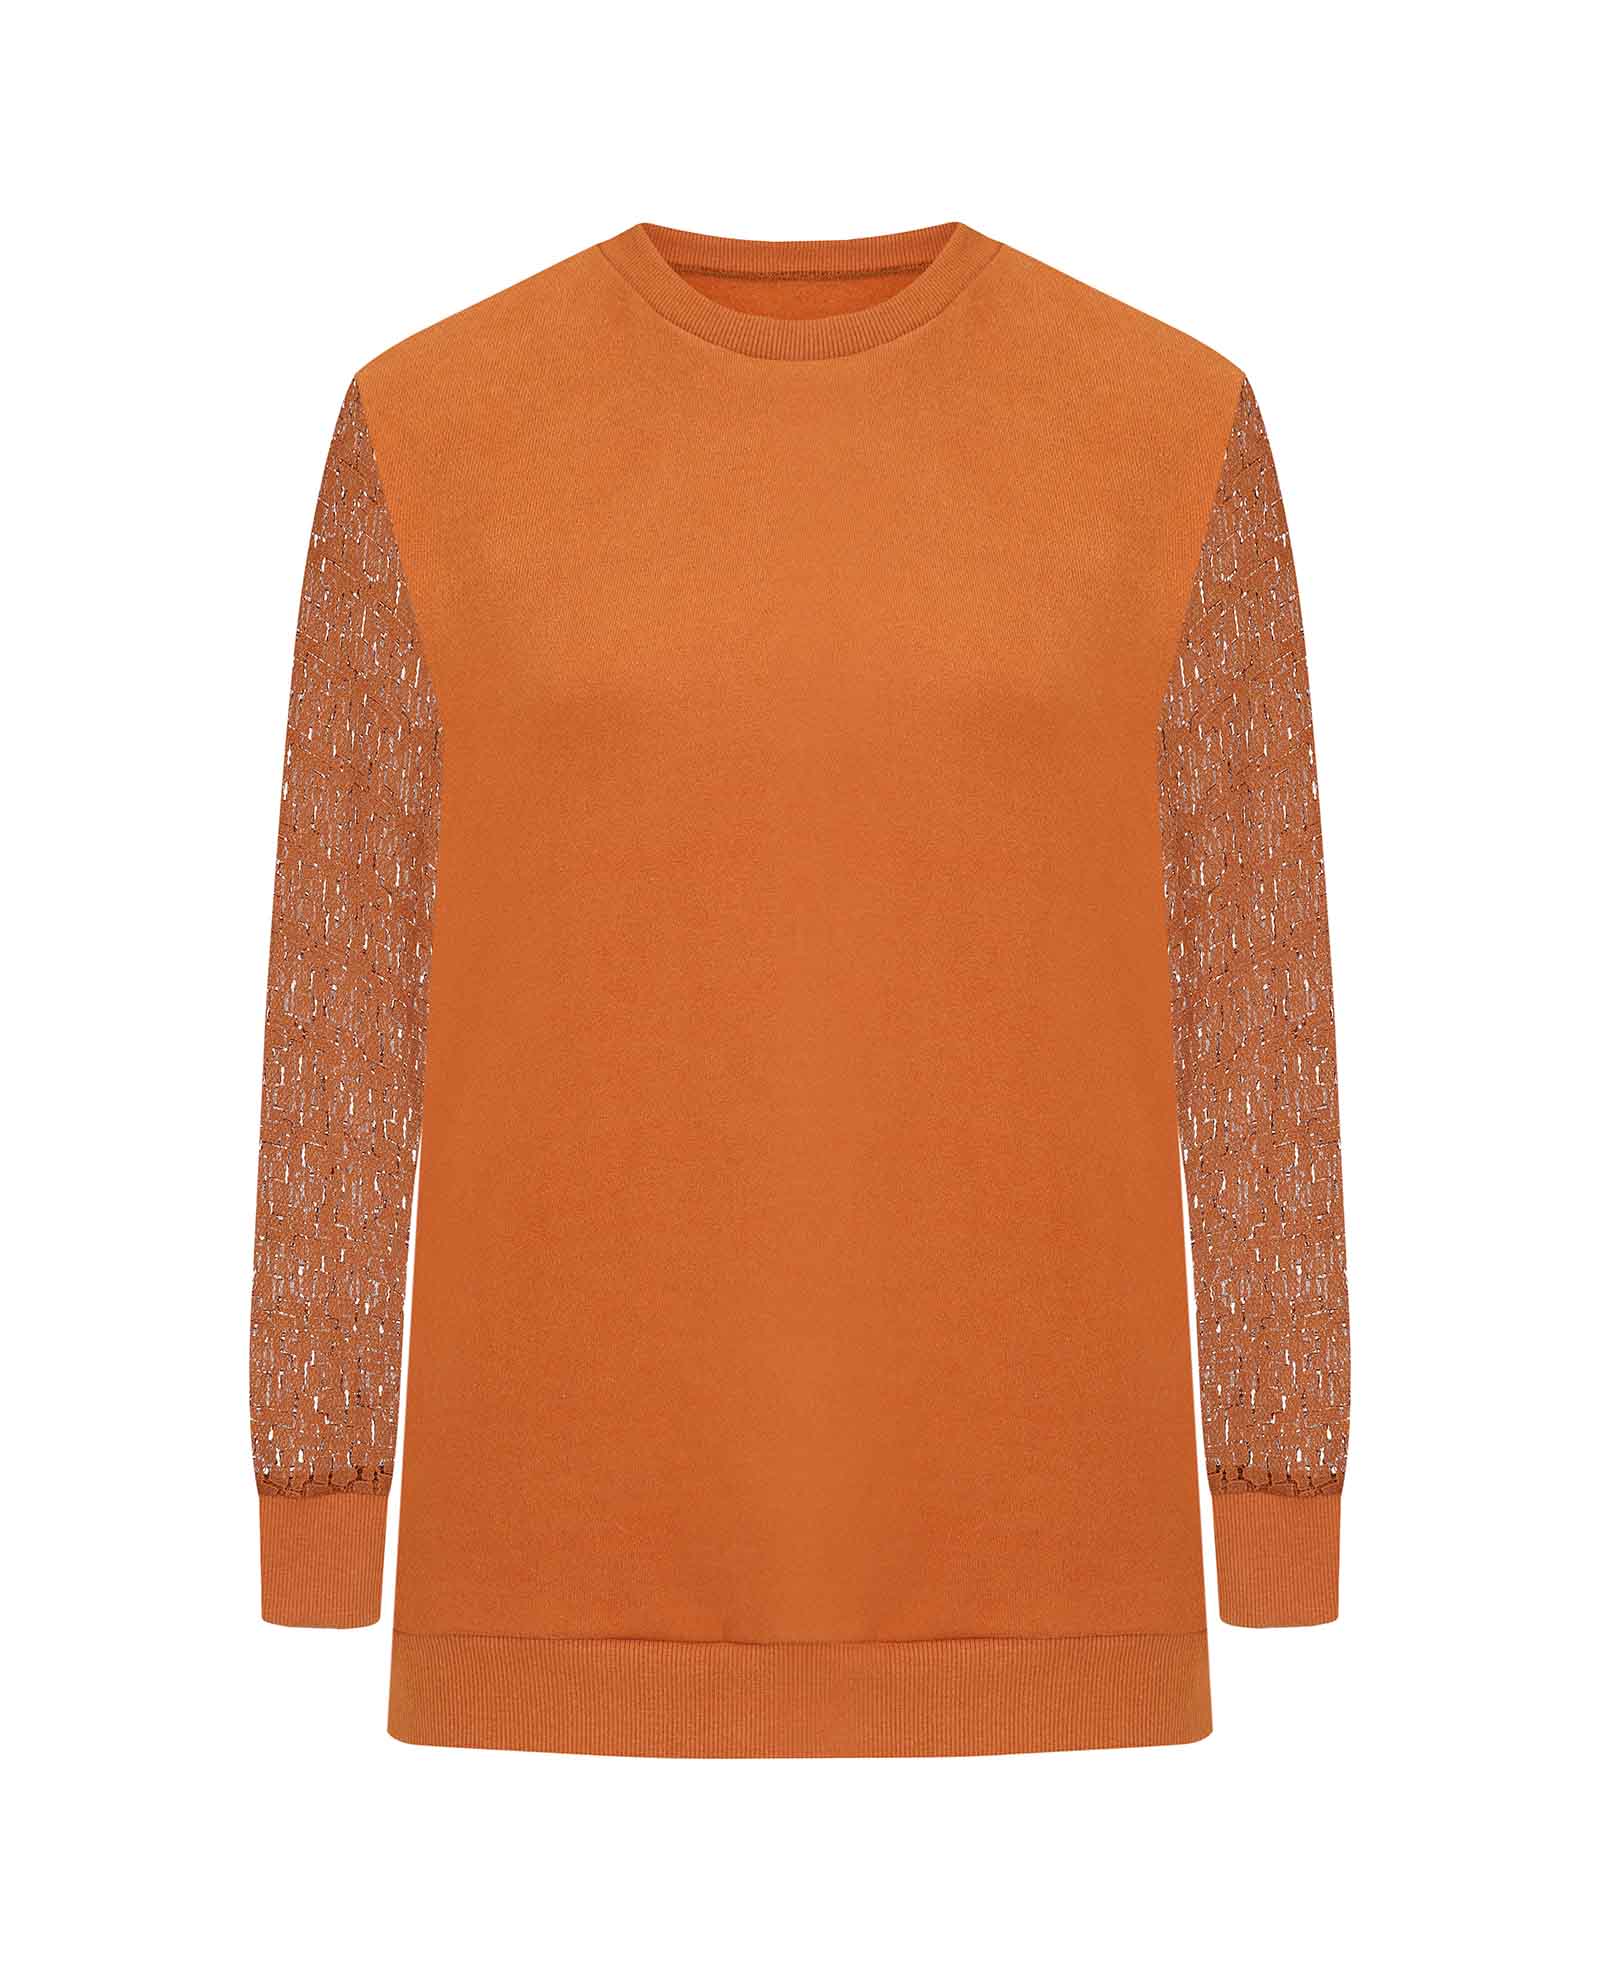 Brown Lace Sleeve Sweatshirt